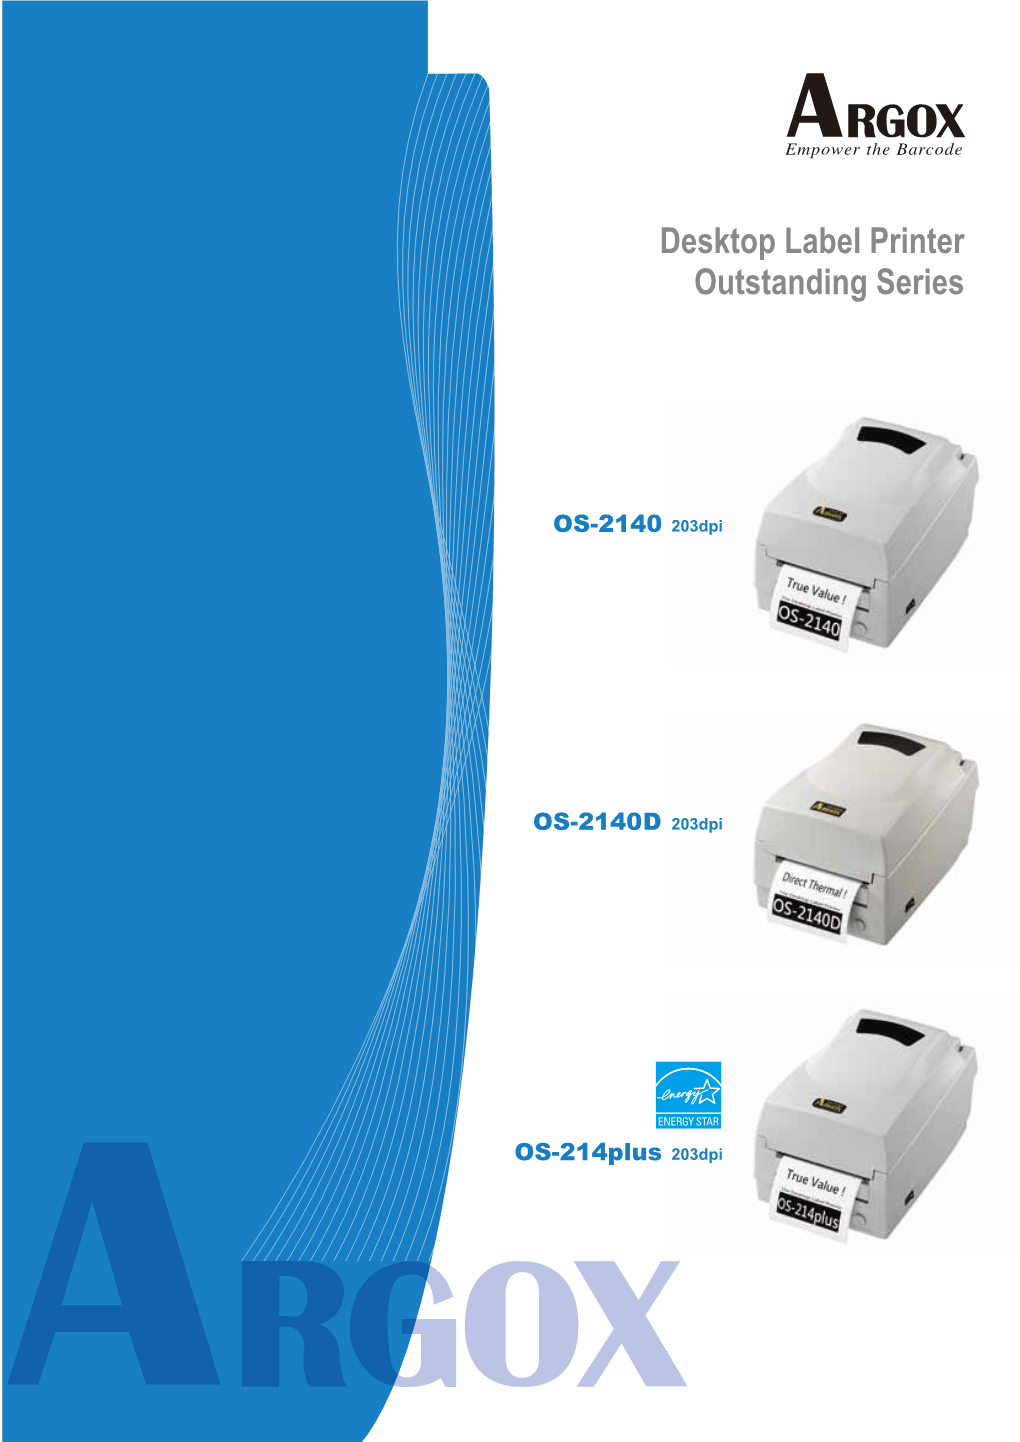 Desktop Label Printer Outstanding Series